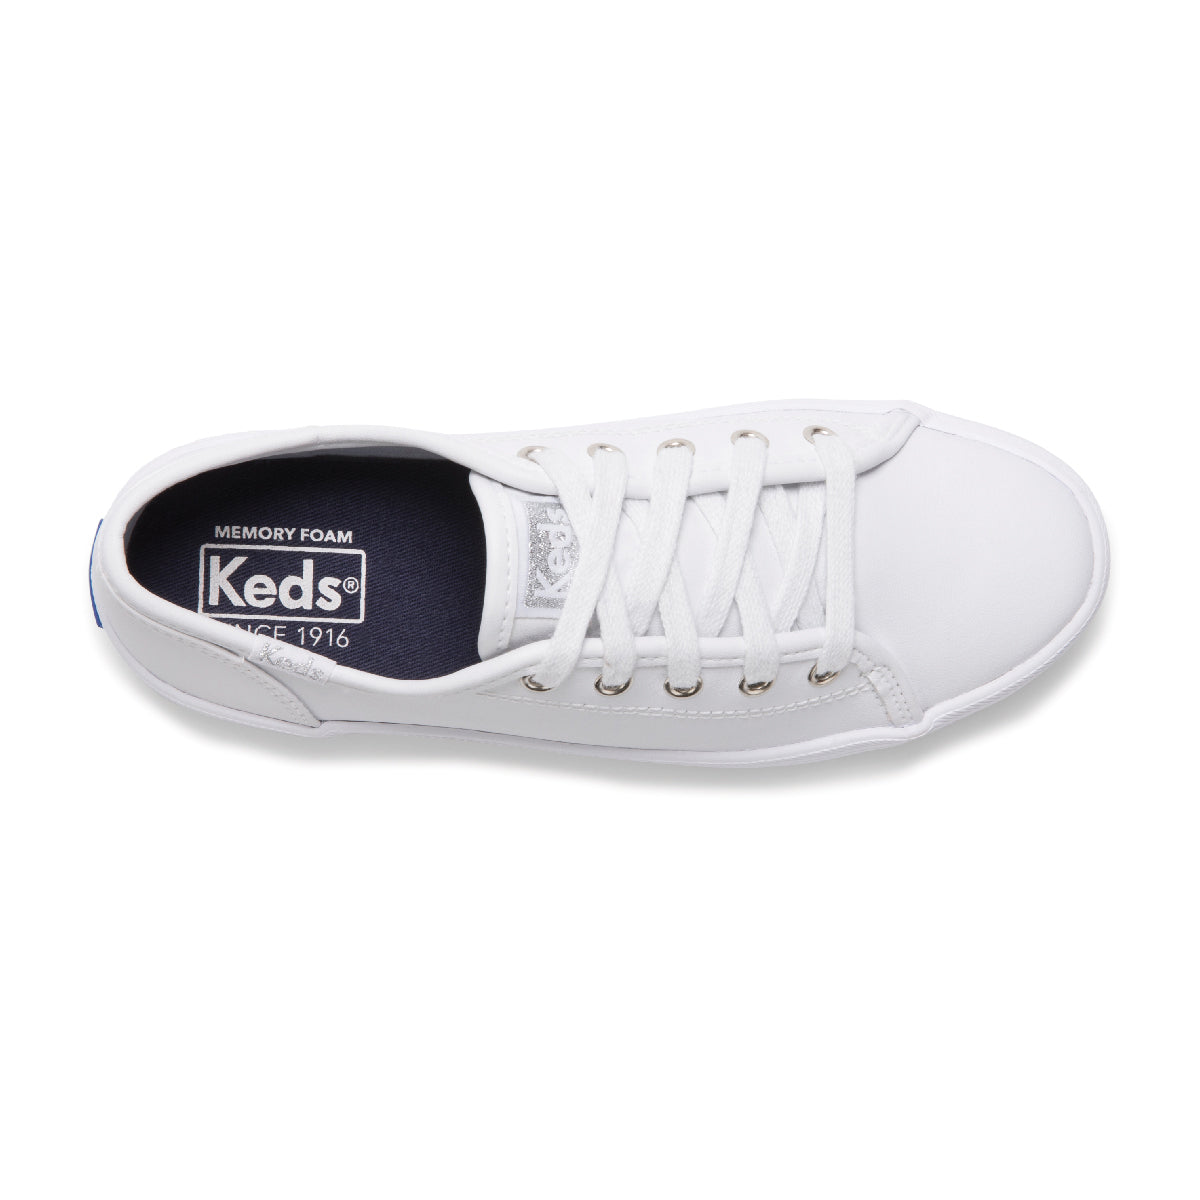 Keds Kid's Kickstart Sneaker White | KK160537